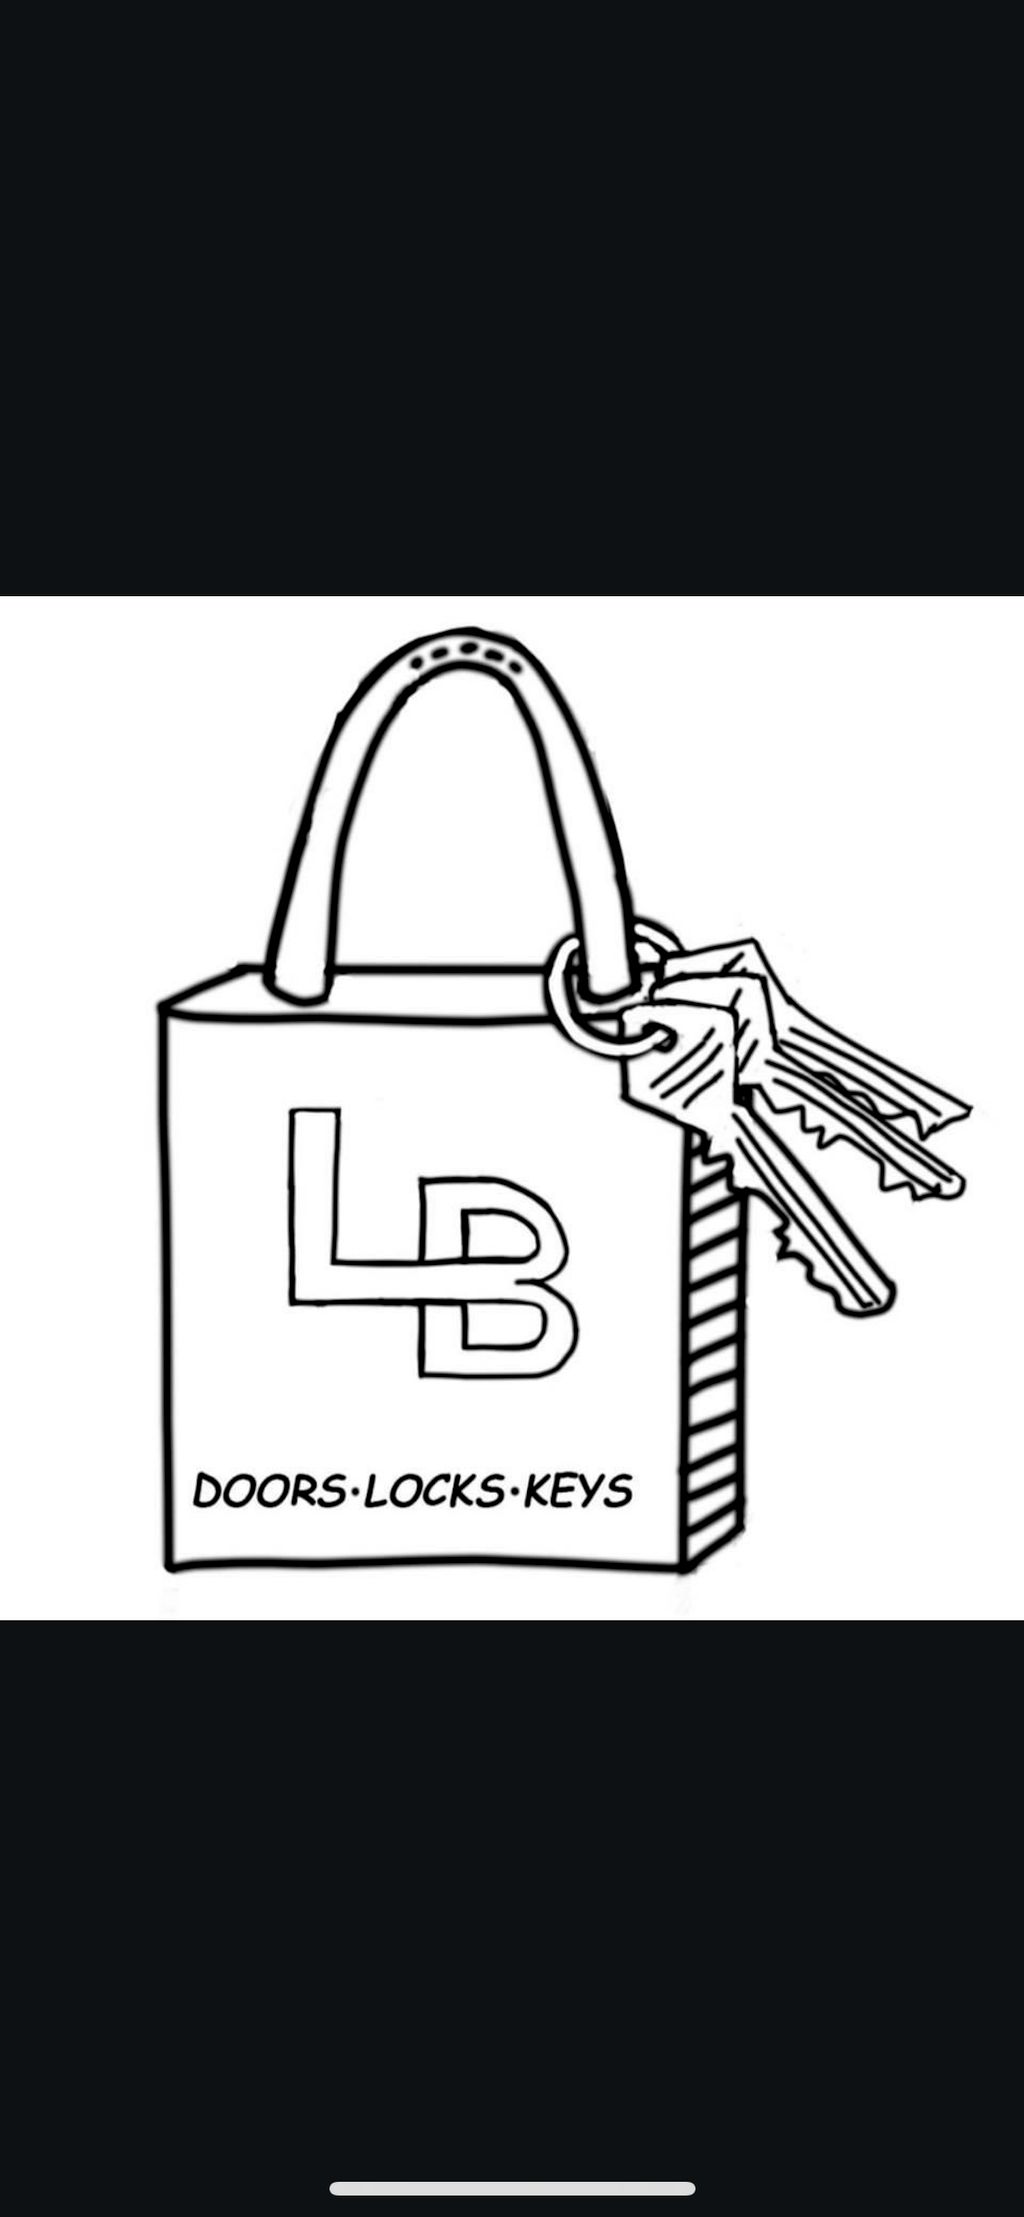 LB Lock & Key